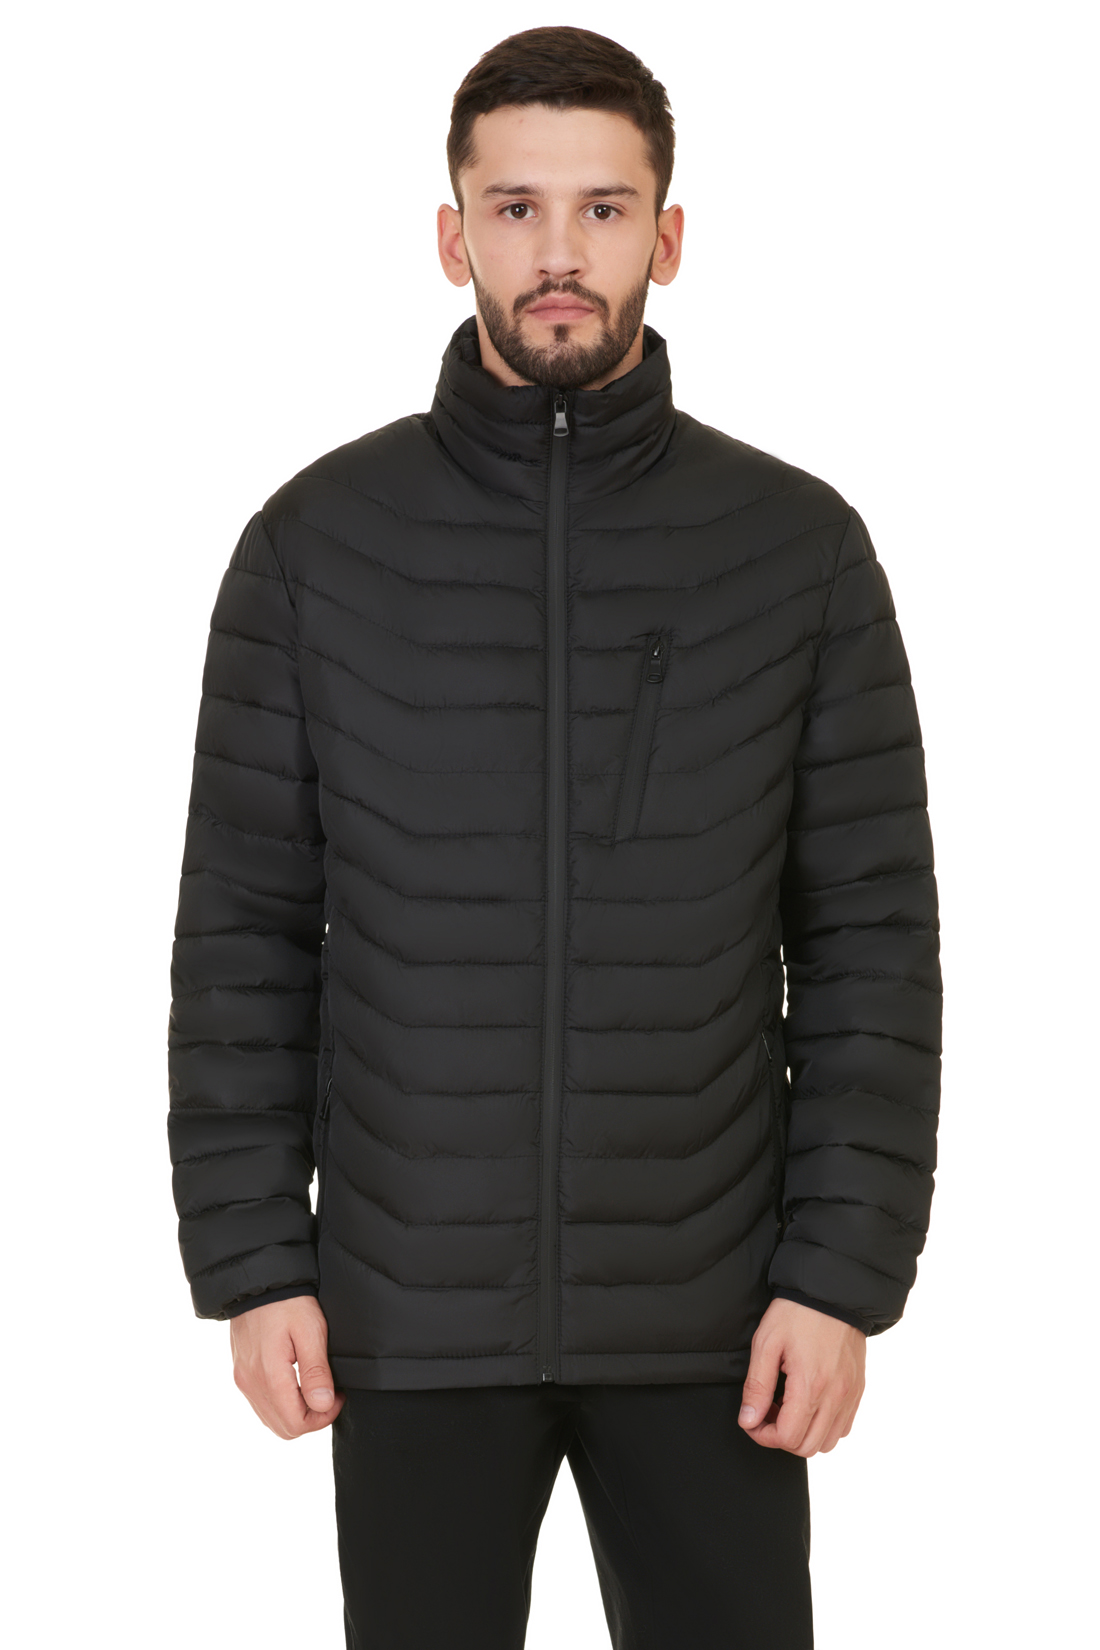 Куртка с непроницаемыми молниями (арт. baon B537547), размер L, цвет черный Куртка с непроницаемыми молниями (арт. baon B537547) - фото 1